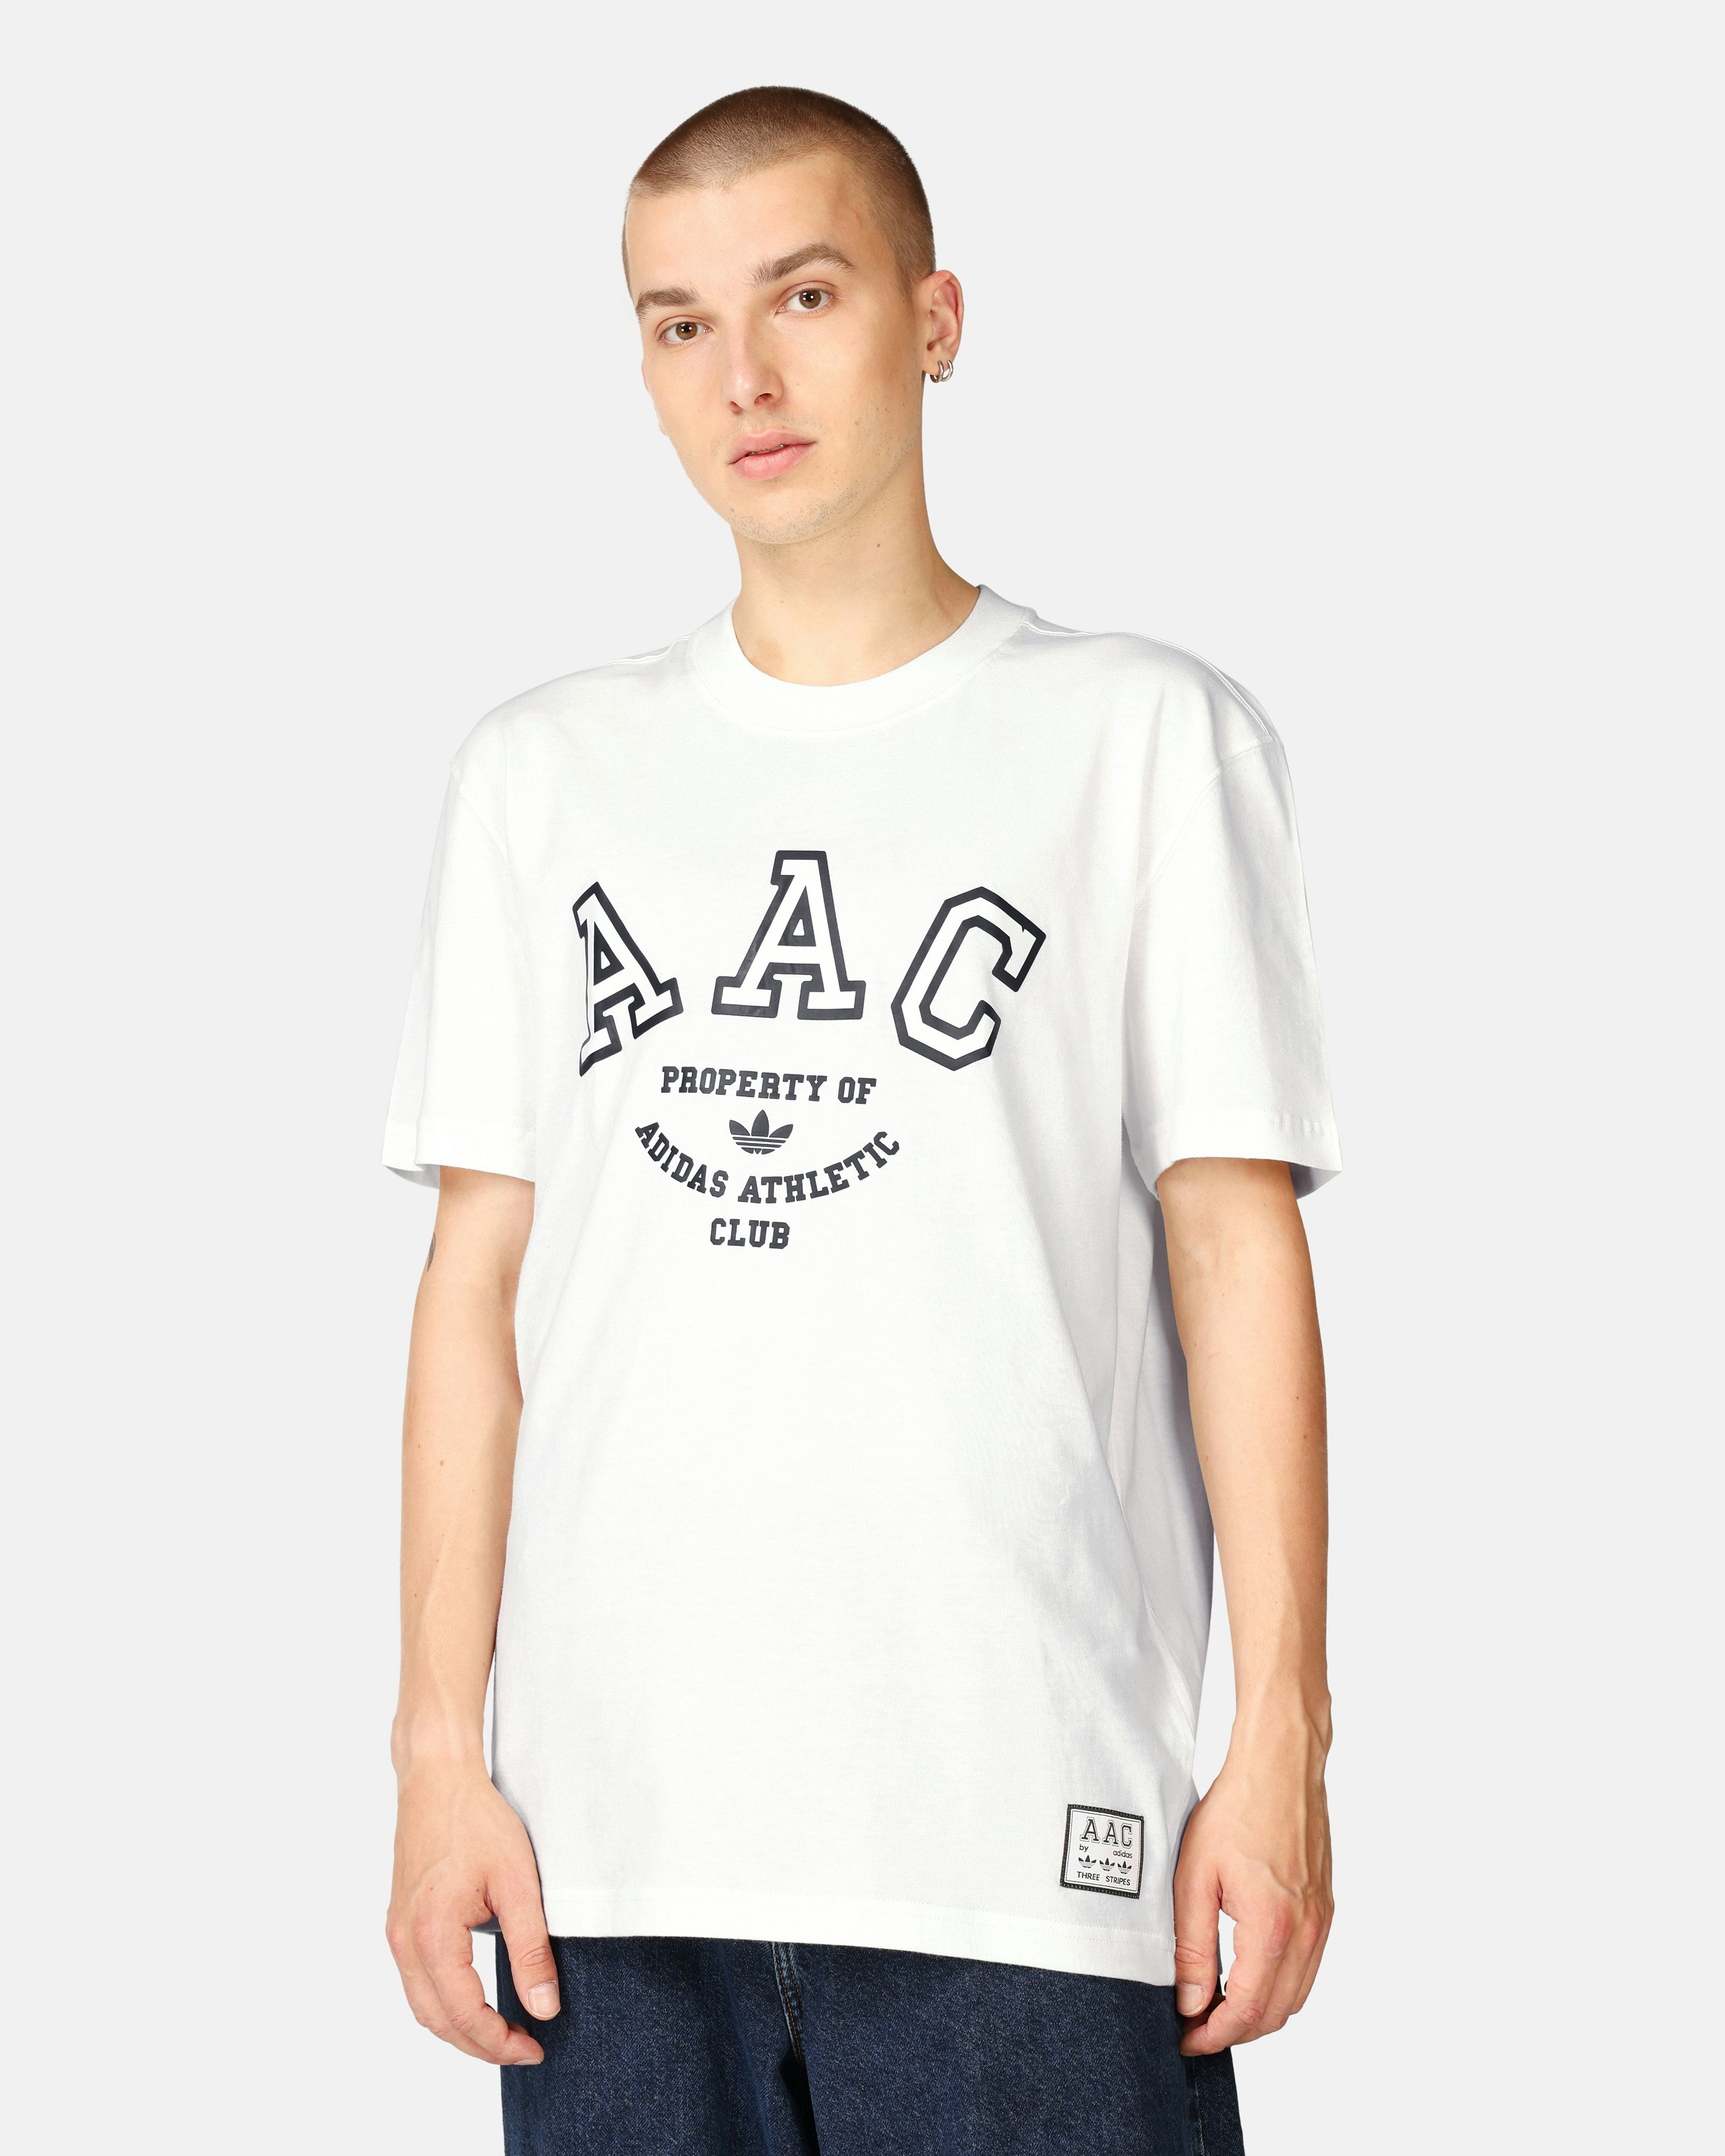 Aimbot' Men's T-Shirt